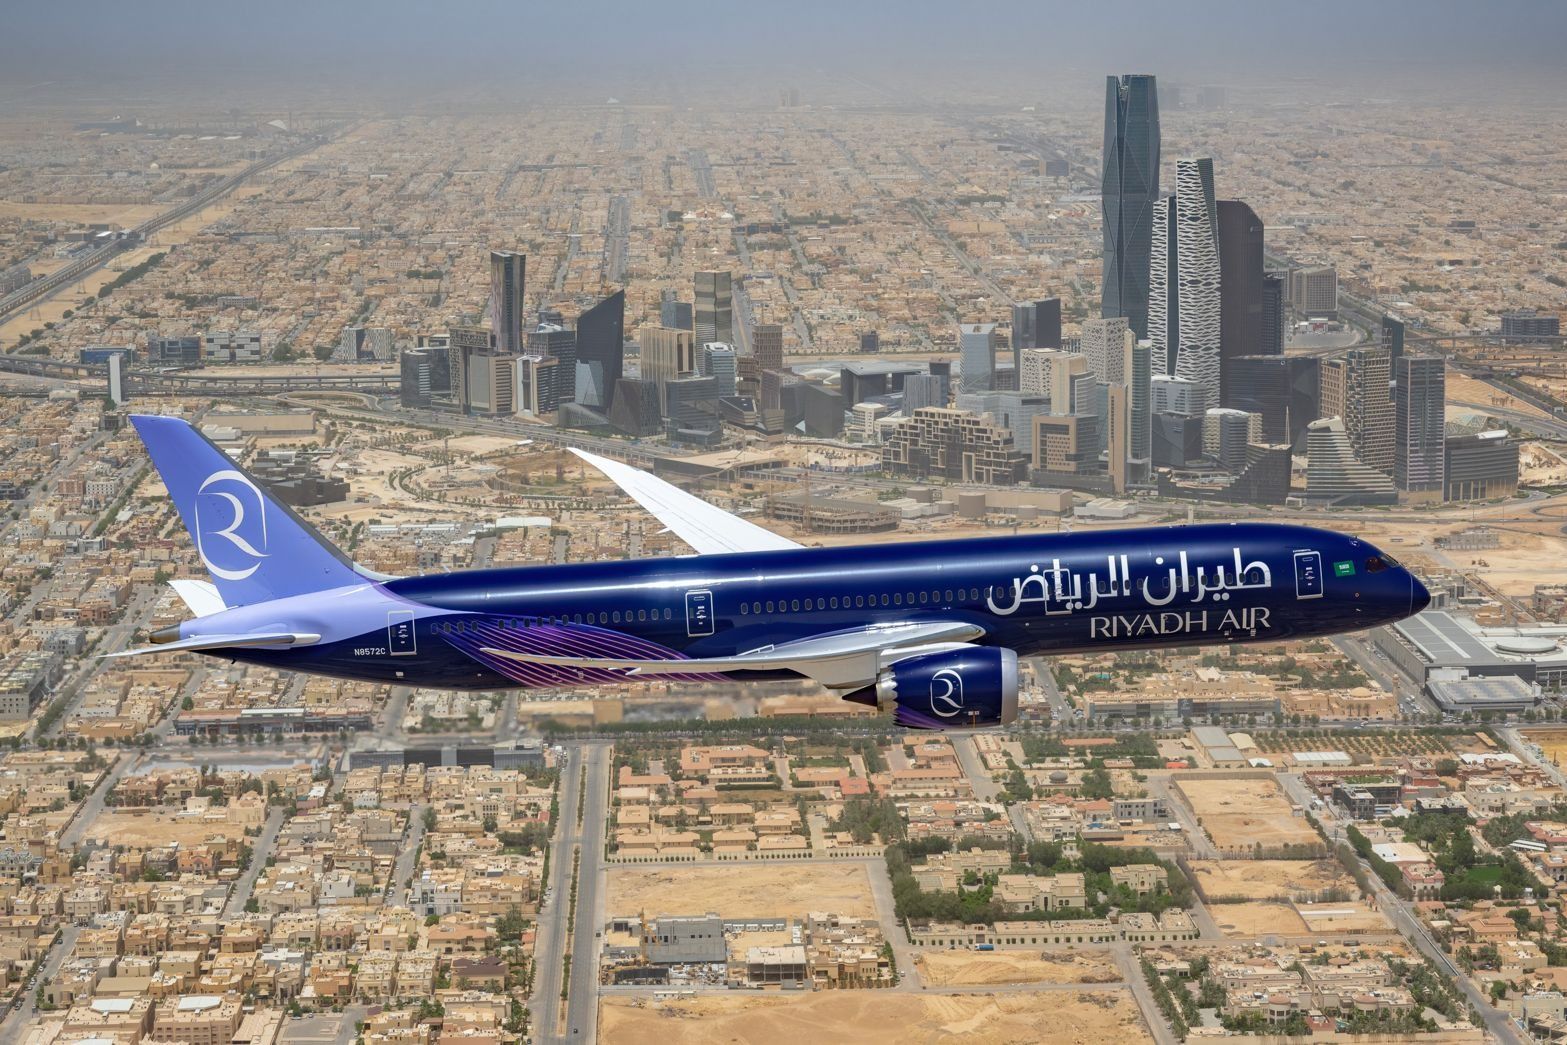 Riyadh Air's First Boeing 787 Flying Over Riyadh, Saudi Arabia